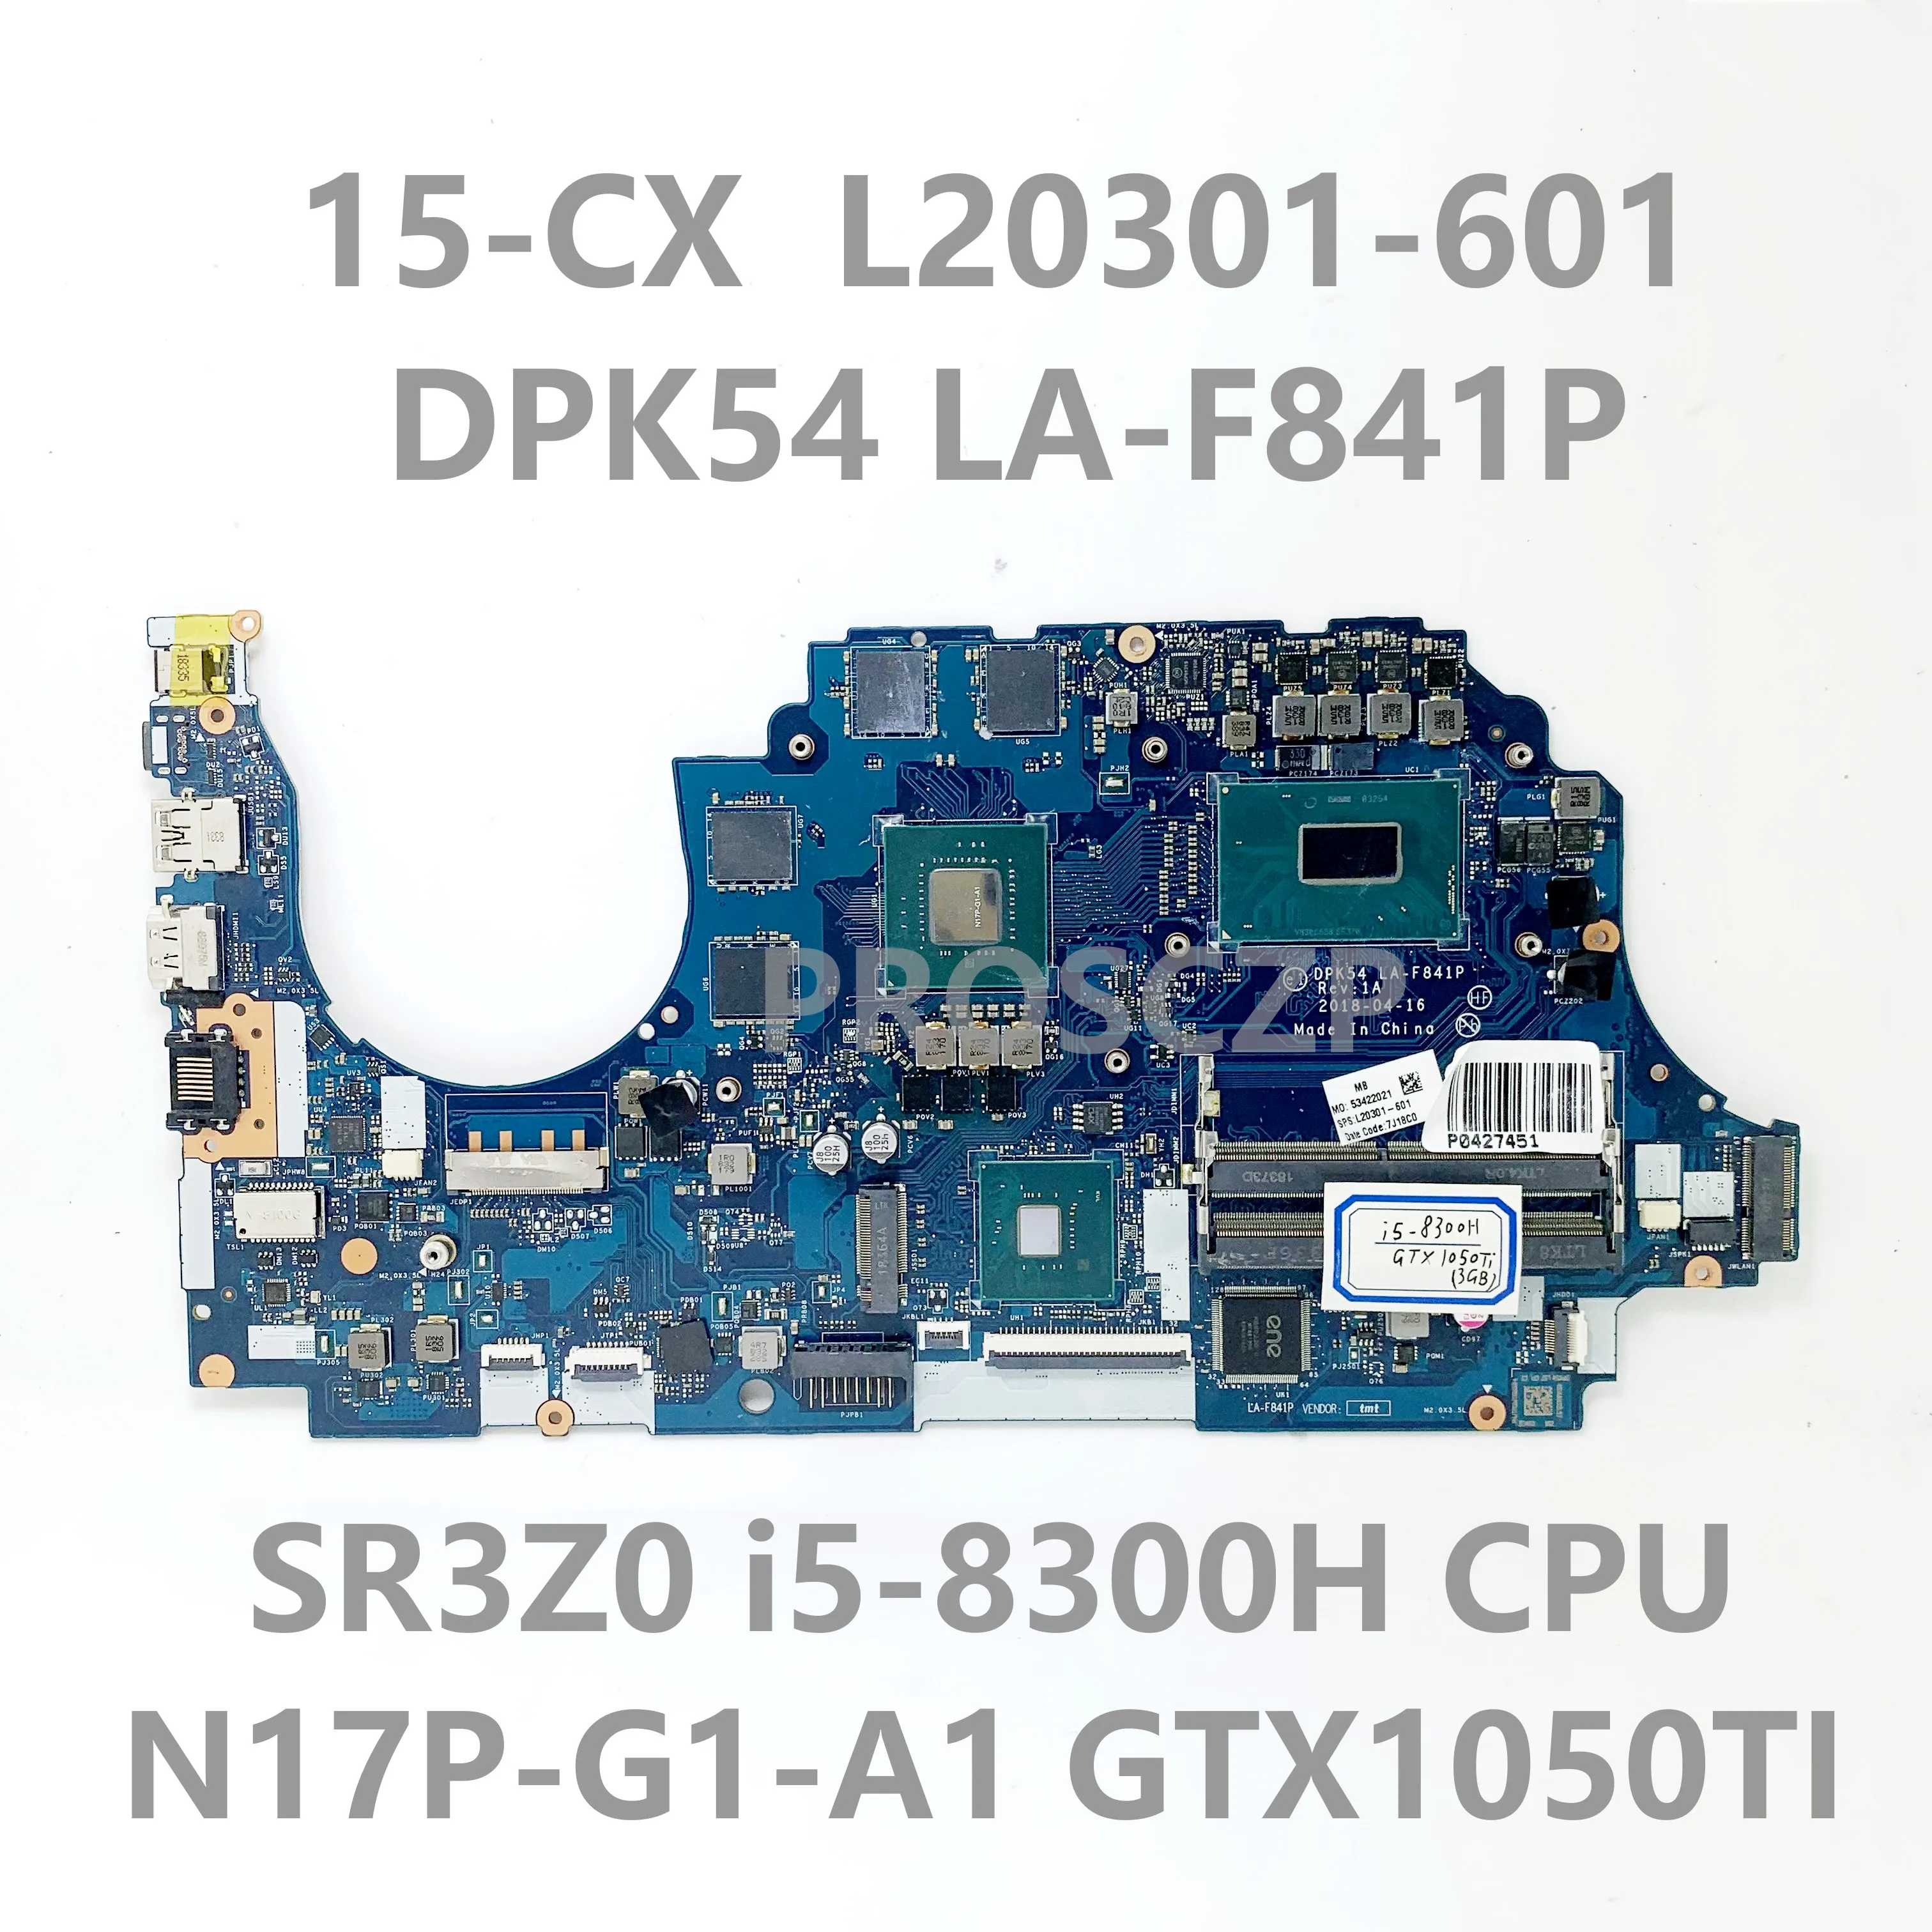 

L20301-001 L20301-501 для ноутбука HP 15-CX материнская плата DPK54 L20301-601 W/ i5-8300H CPU LA-F841P GTX1050TI 100% протестирована